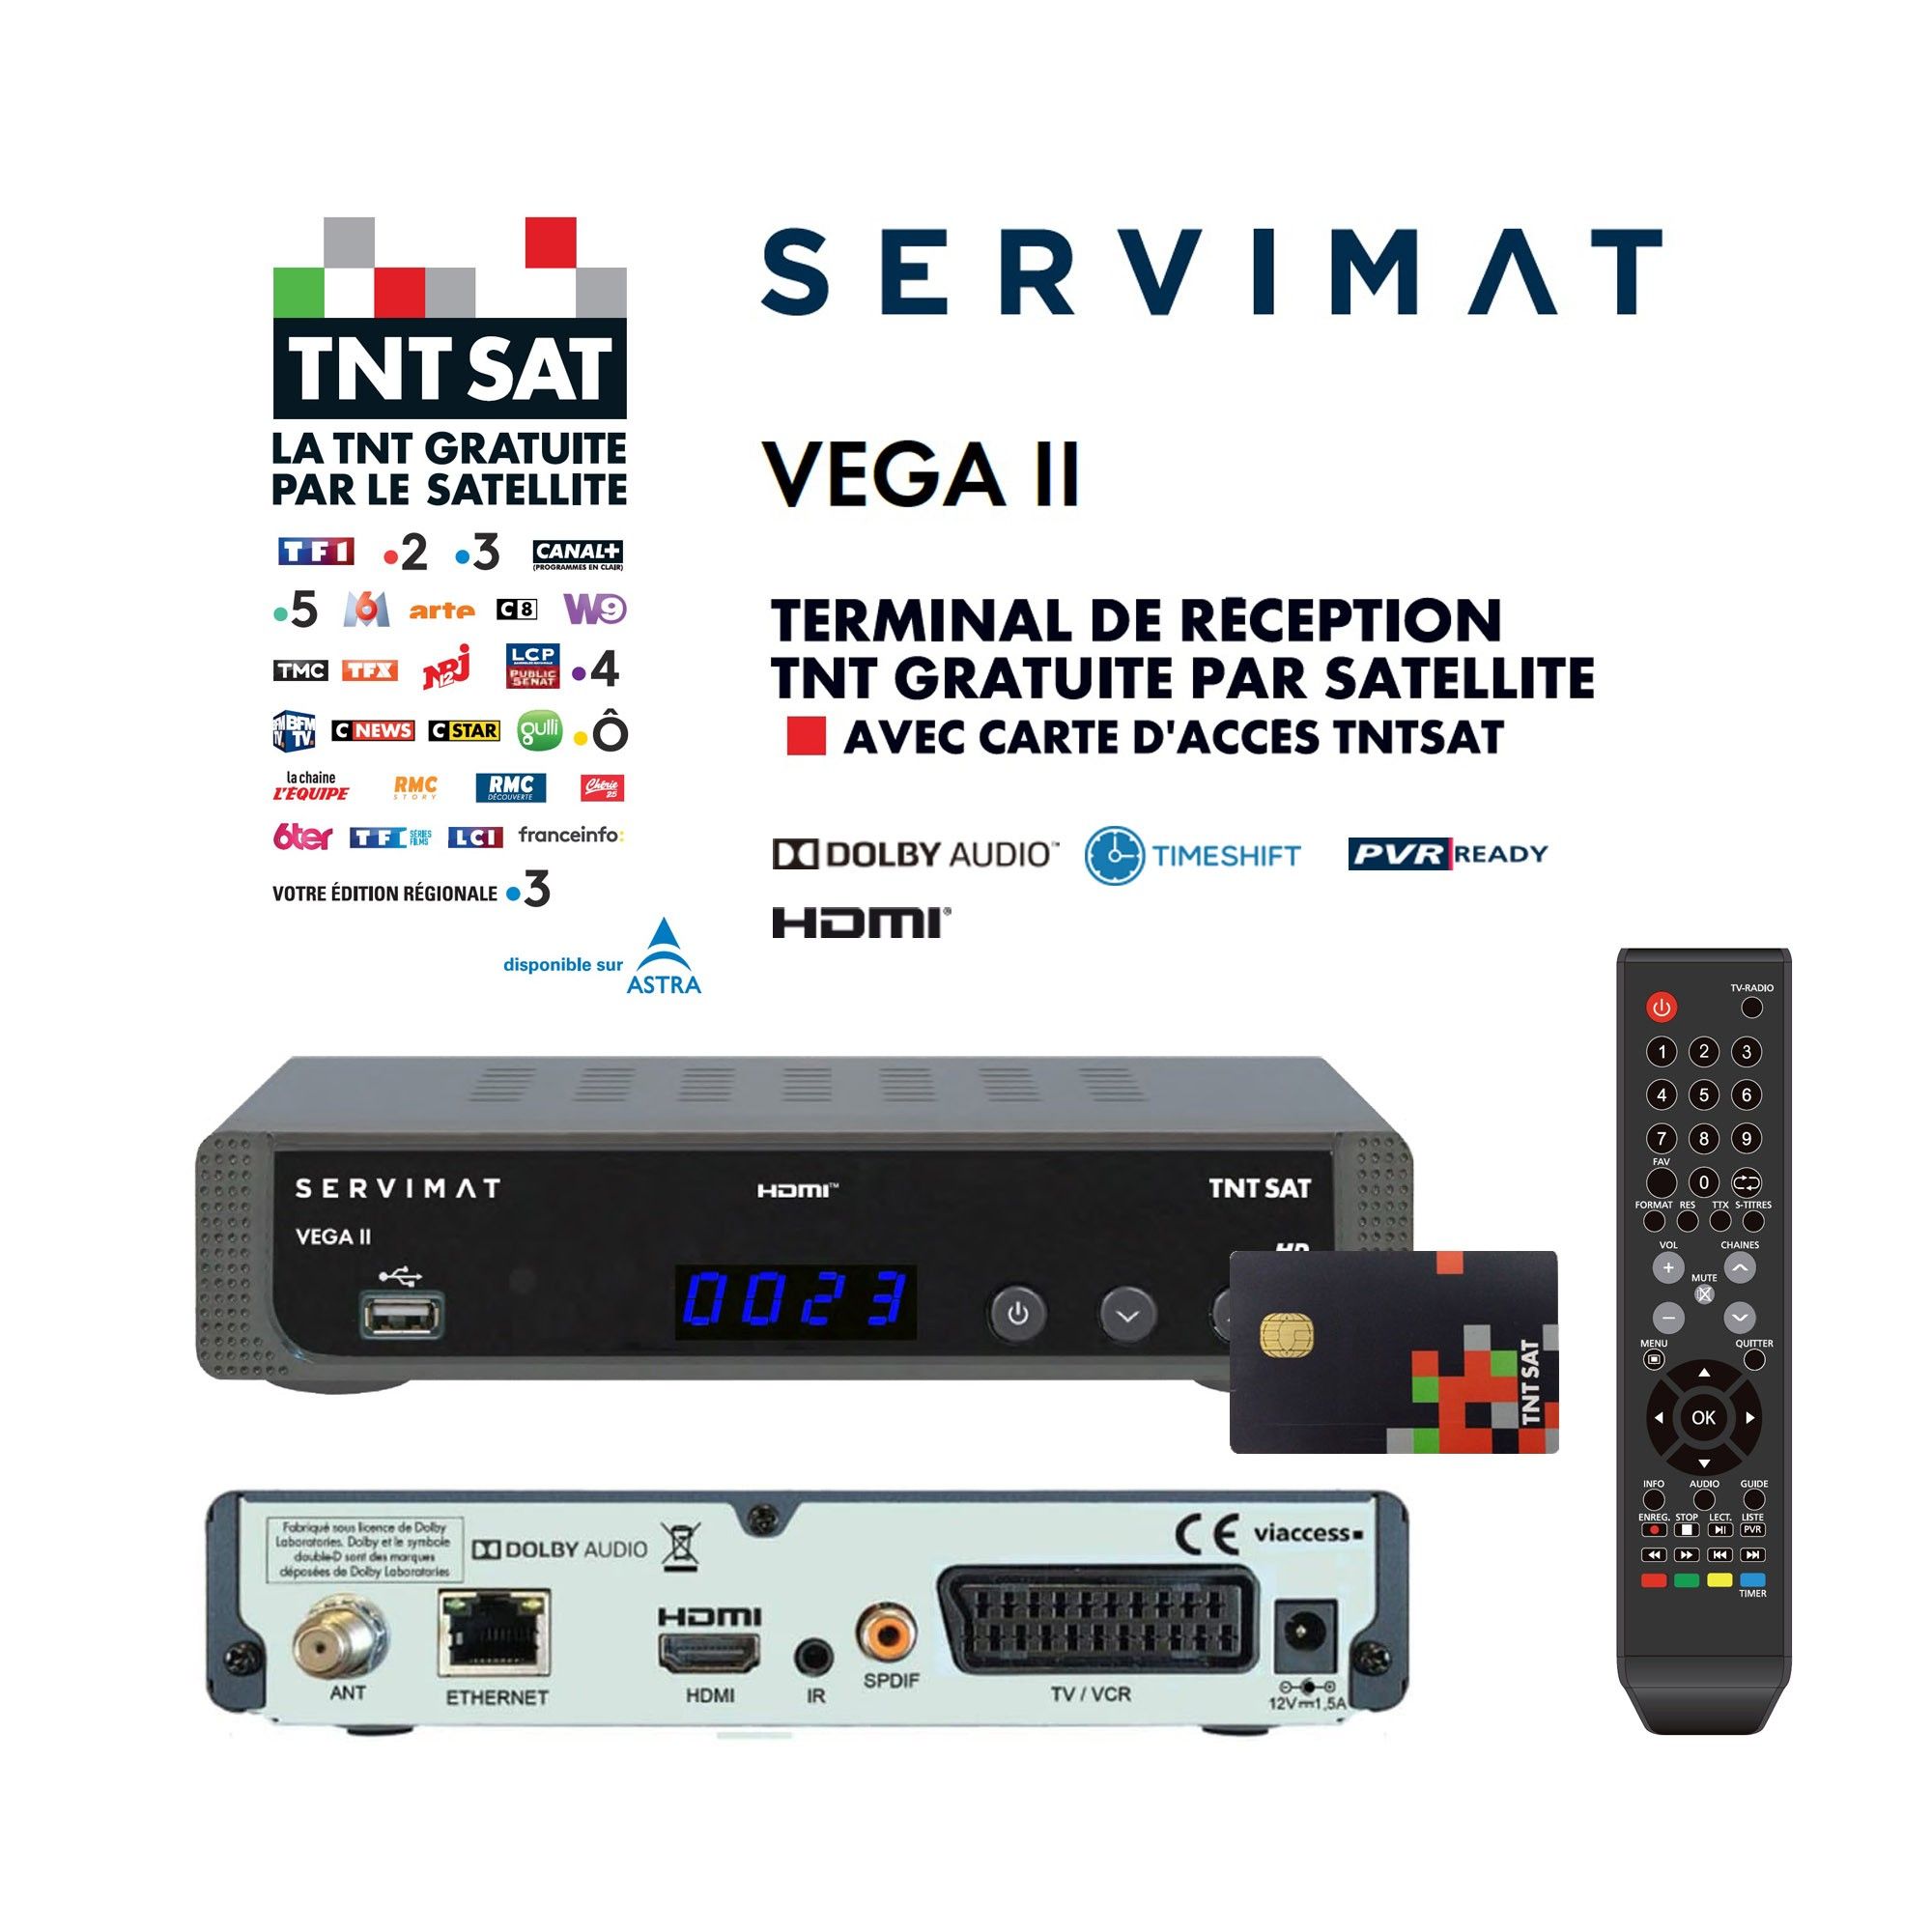 Récepteur TV satellite Full HD - SERVIMAT VEGA II + Carte d'accès TNTSAT V6 - Astra 19.2°, Time Shift, Son Dolby Digital +, TNT Gratuite Par Satellite